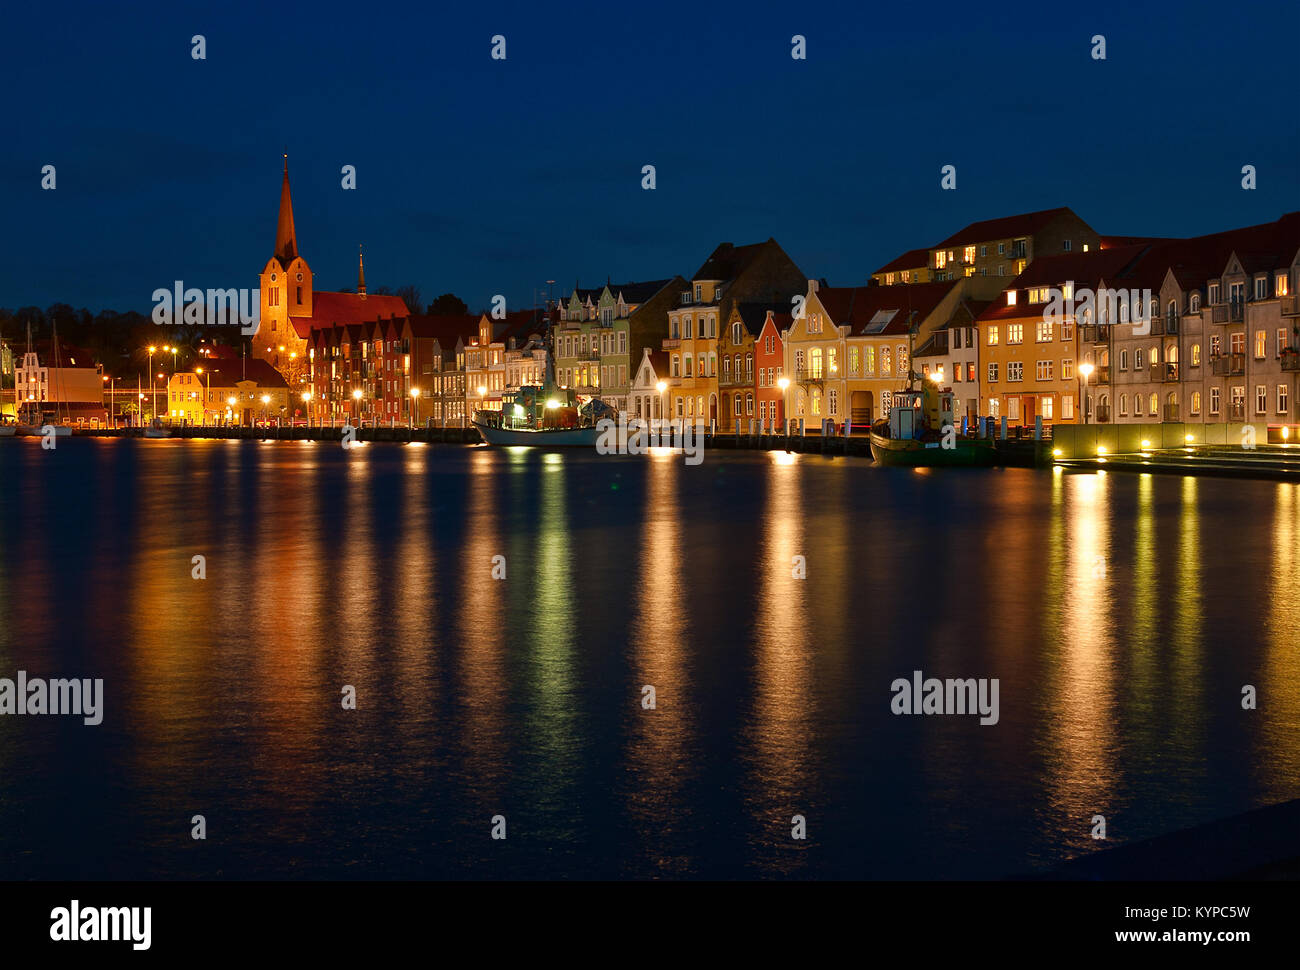 Nacht Blick auf die Sonderborg. Hafen. abends die Lichter der Stadt im Wasser spiegelt. Im südlichen Dänemark. Stockfoto